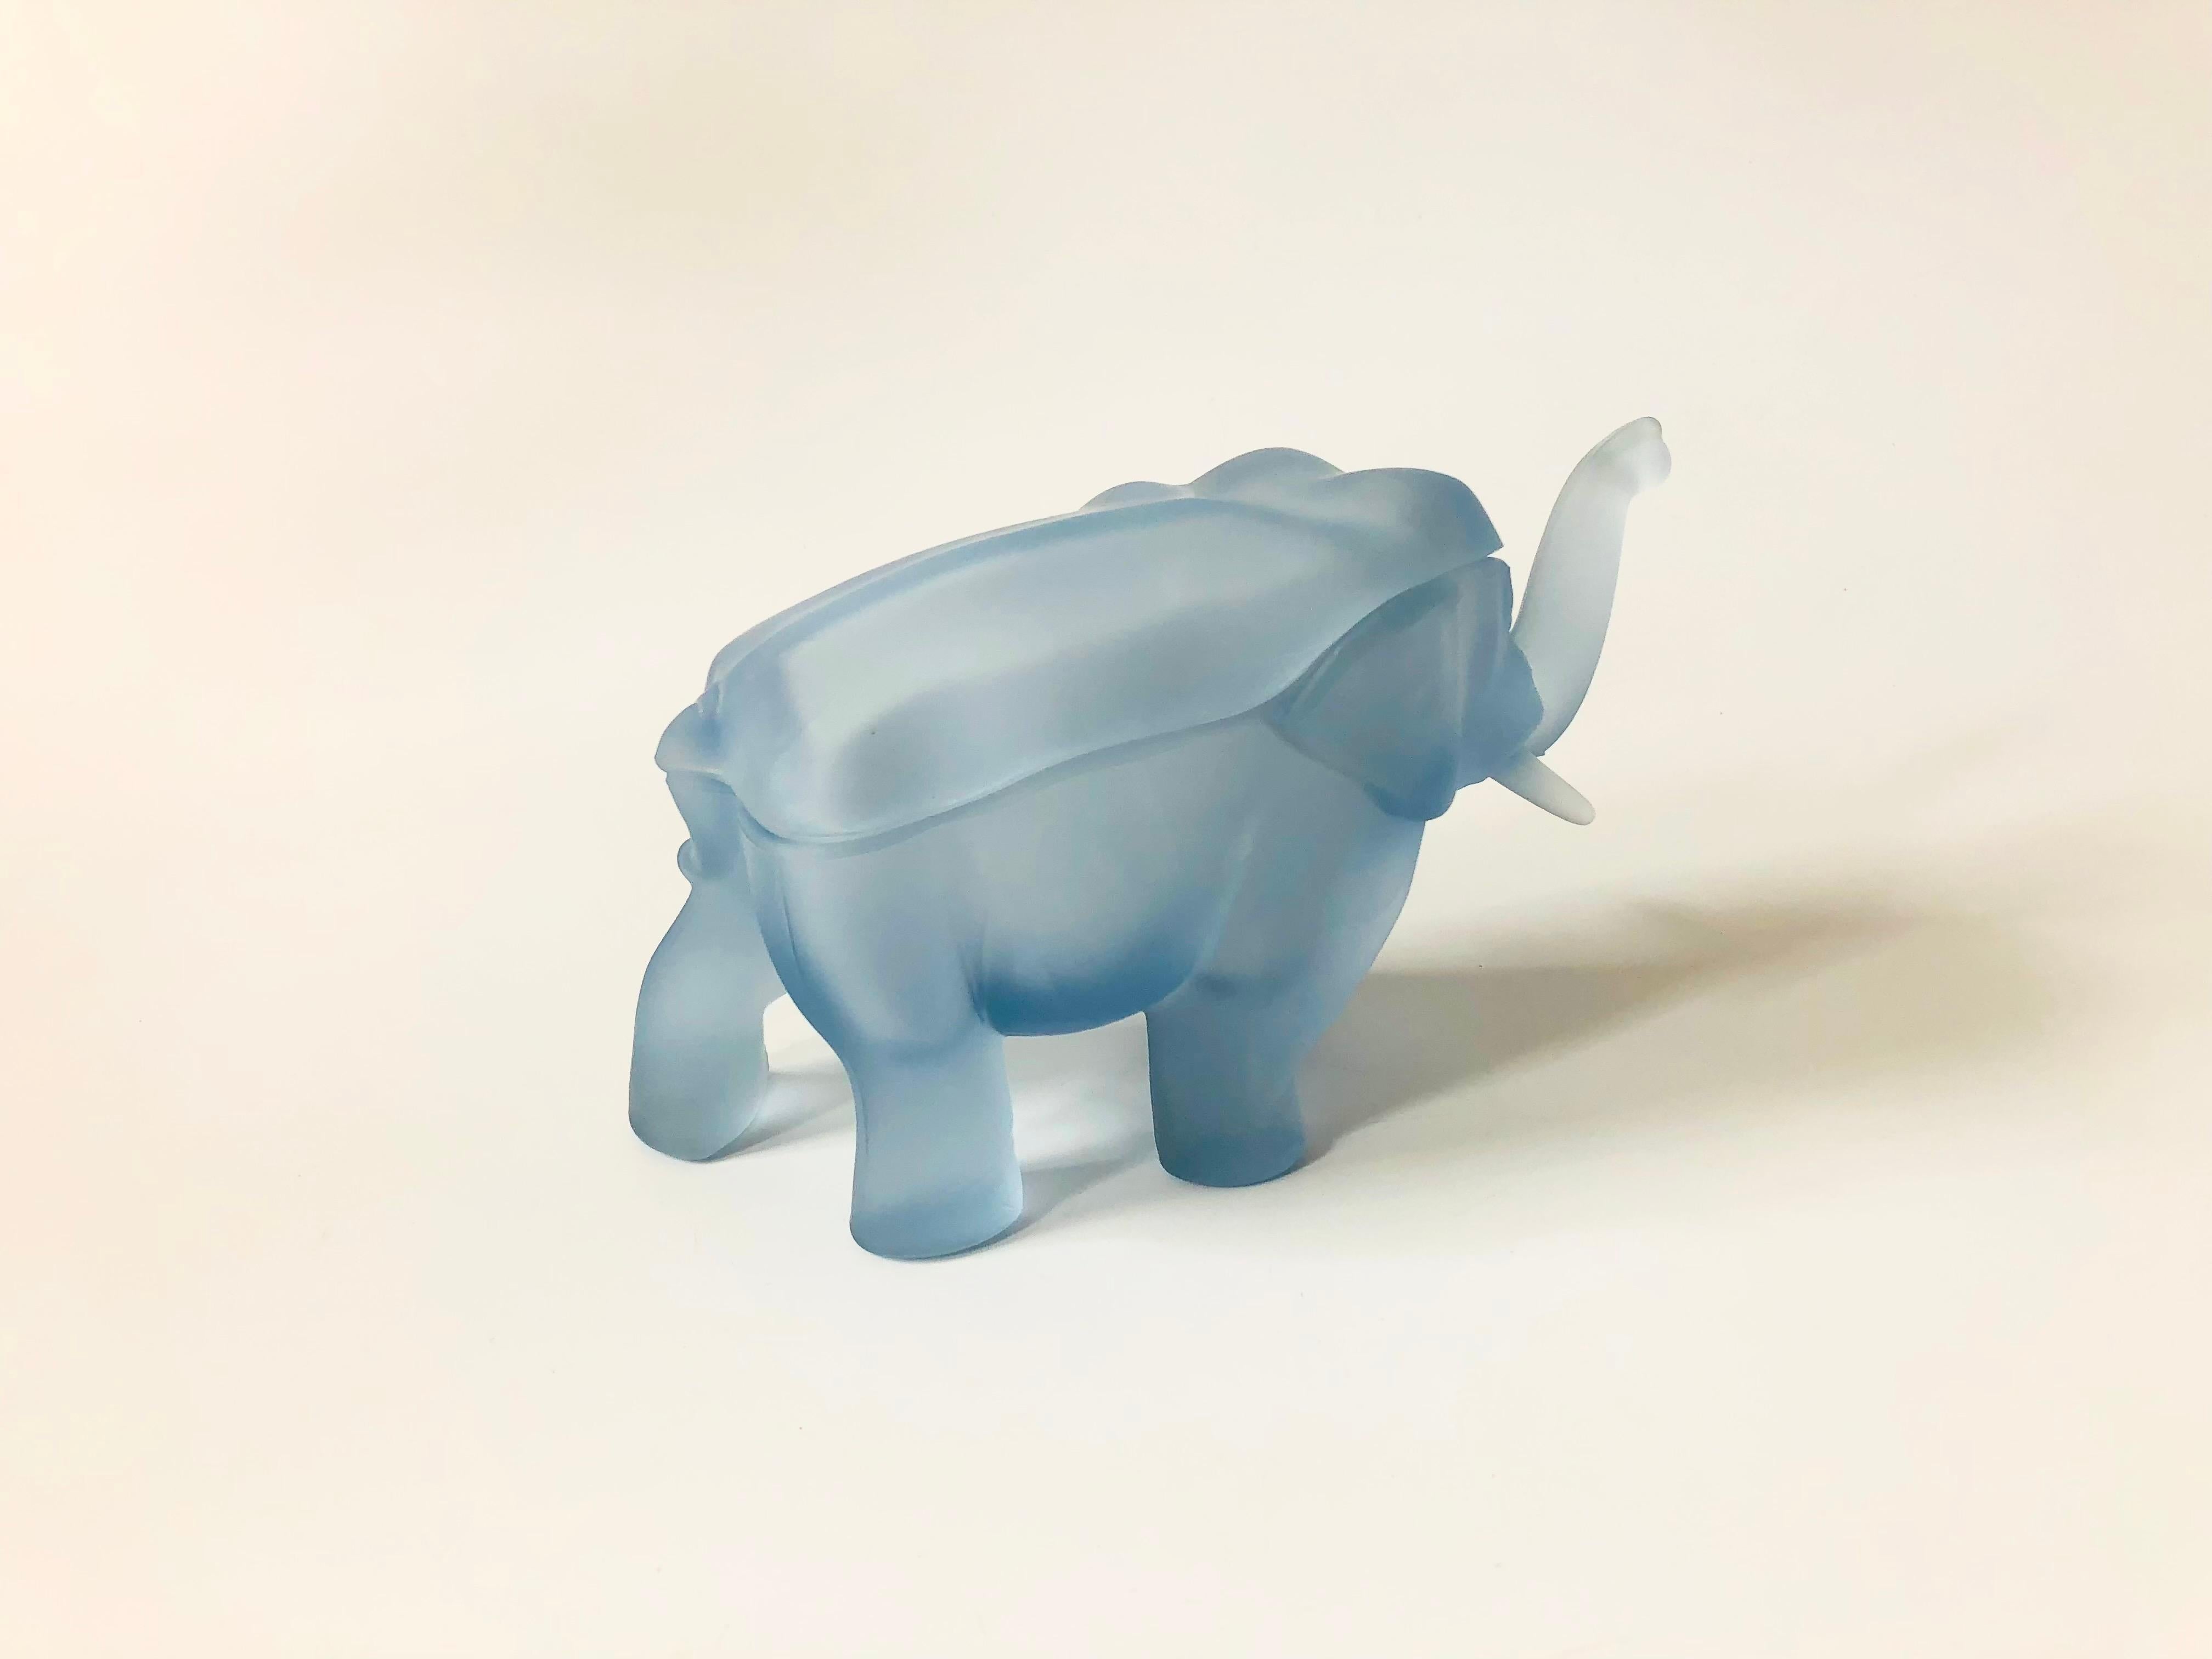 blue glass elephant figurine